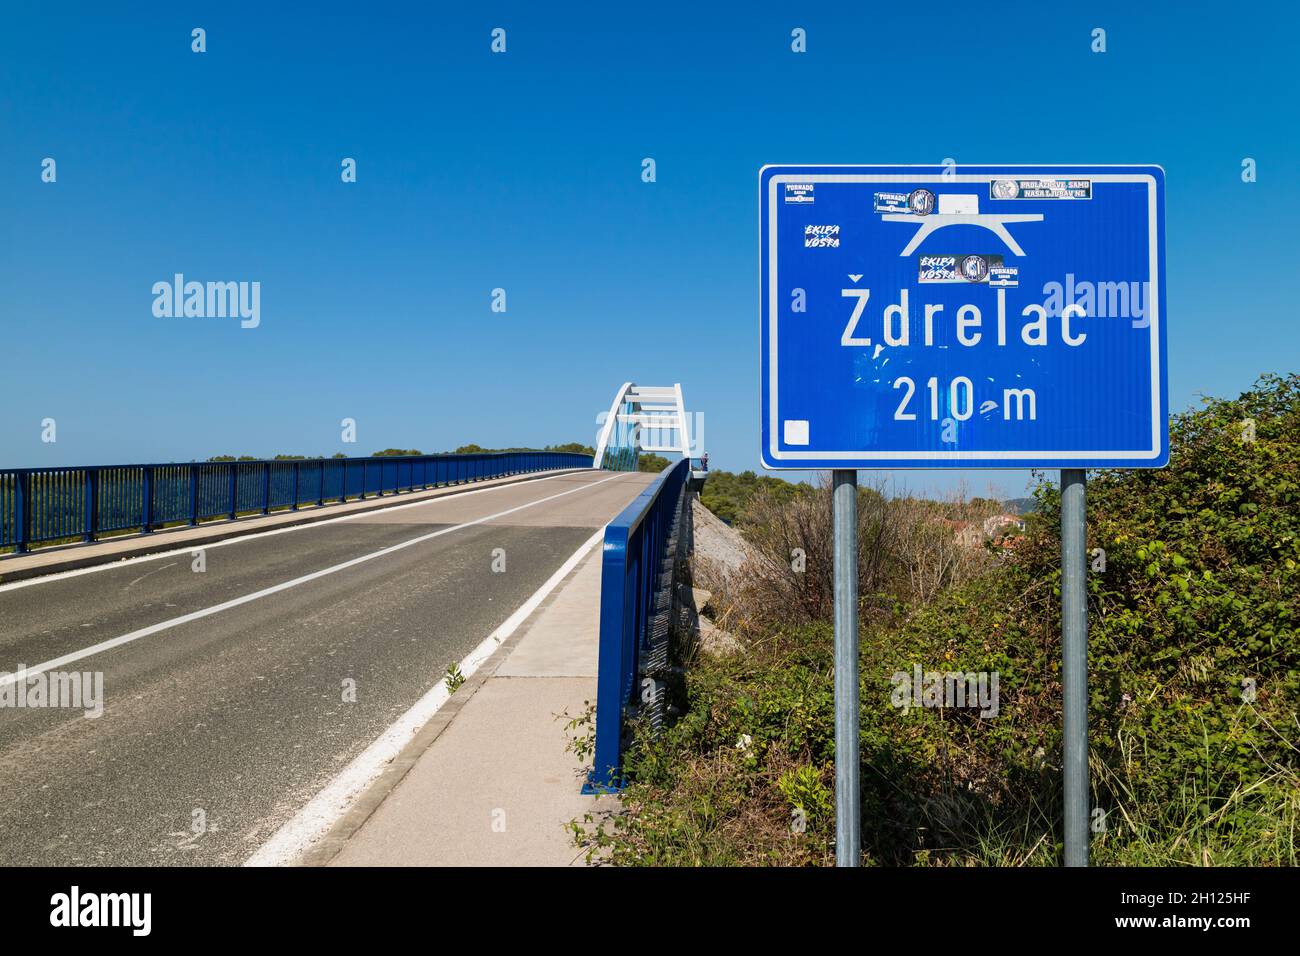 Pont Zdrelac reliant Ugljan et l'île Pasman, Dalmatie, Croatie Banque D'Images